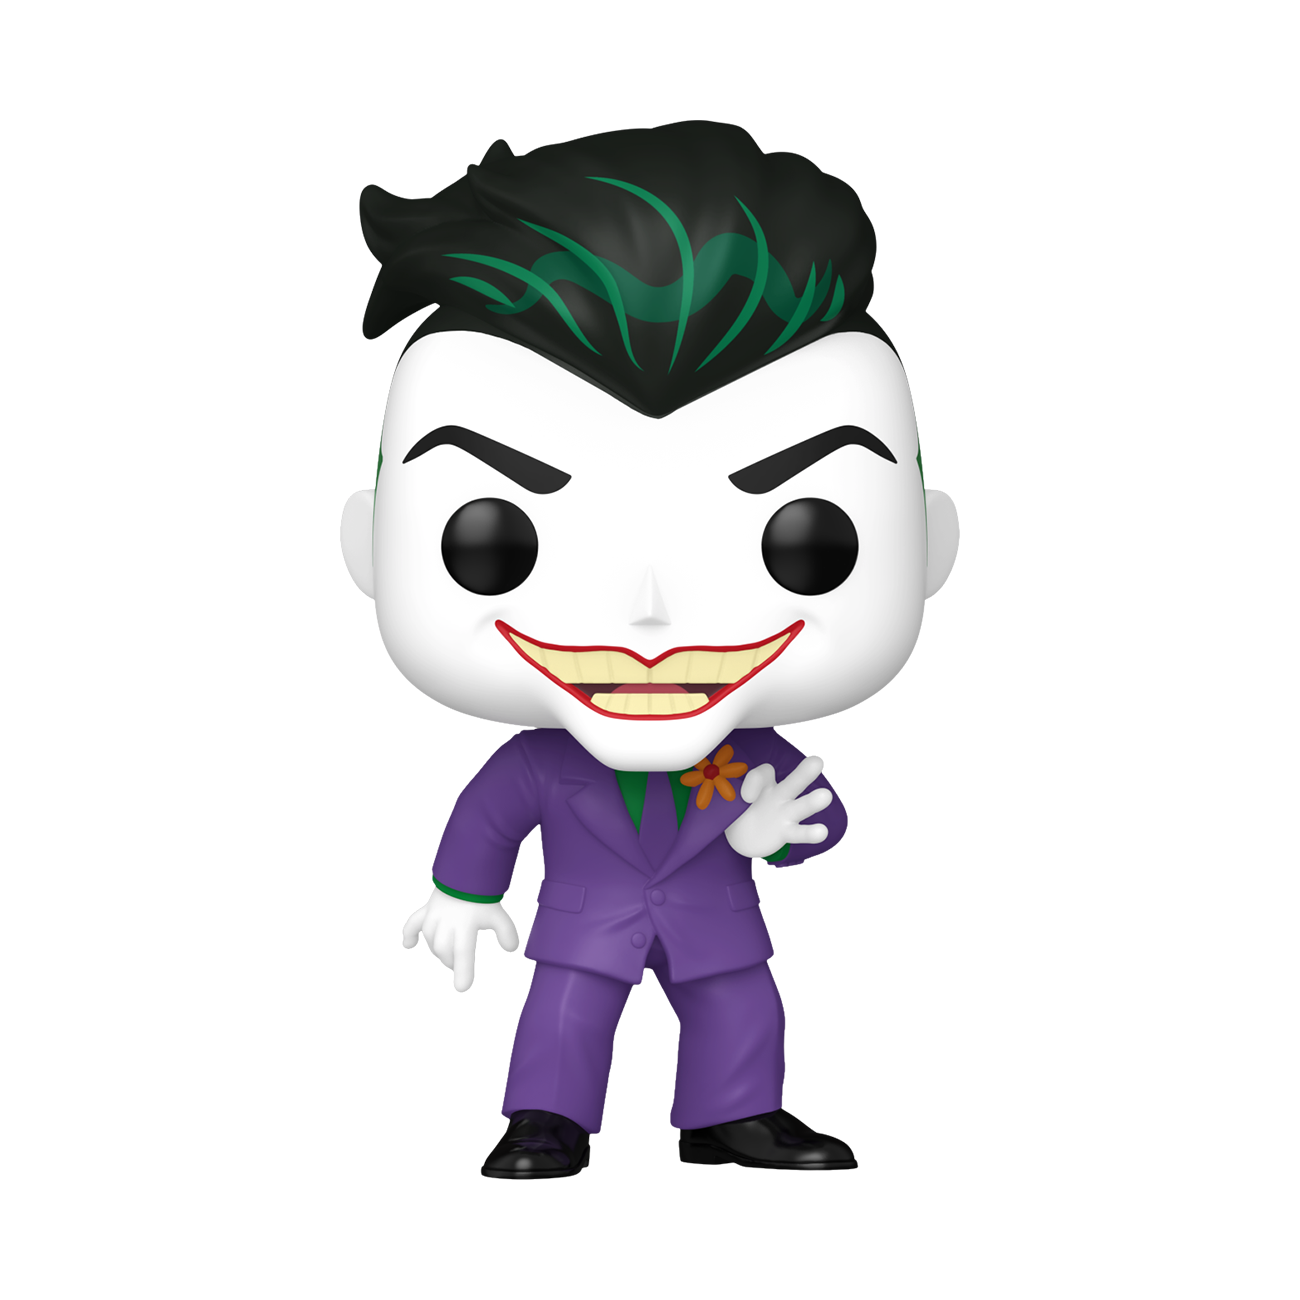 Pop! The Joker